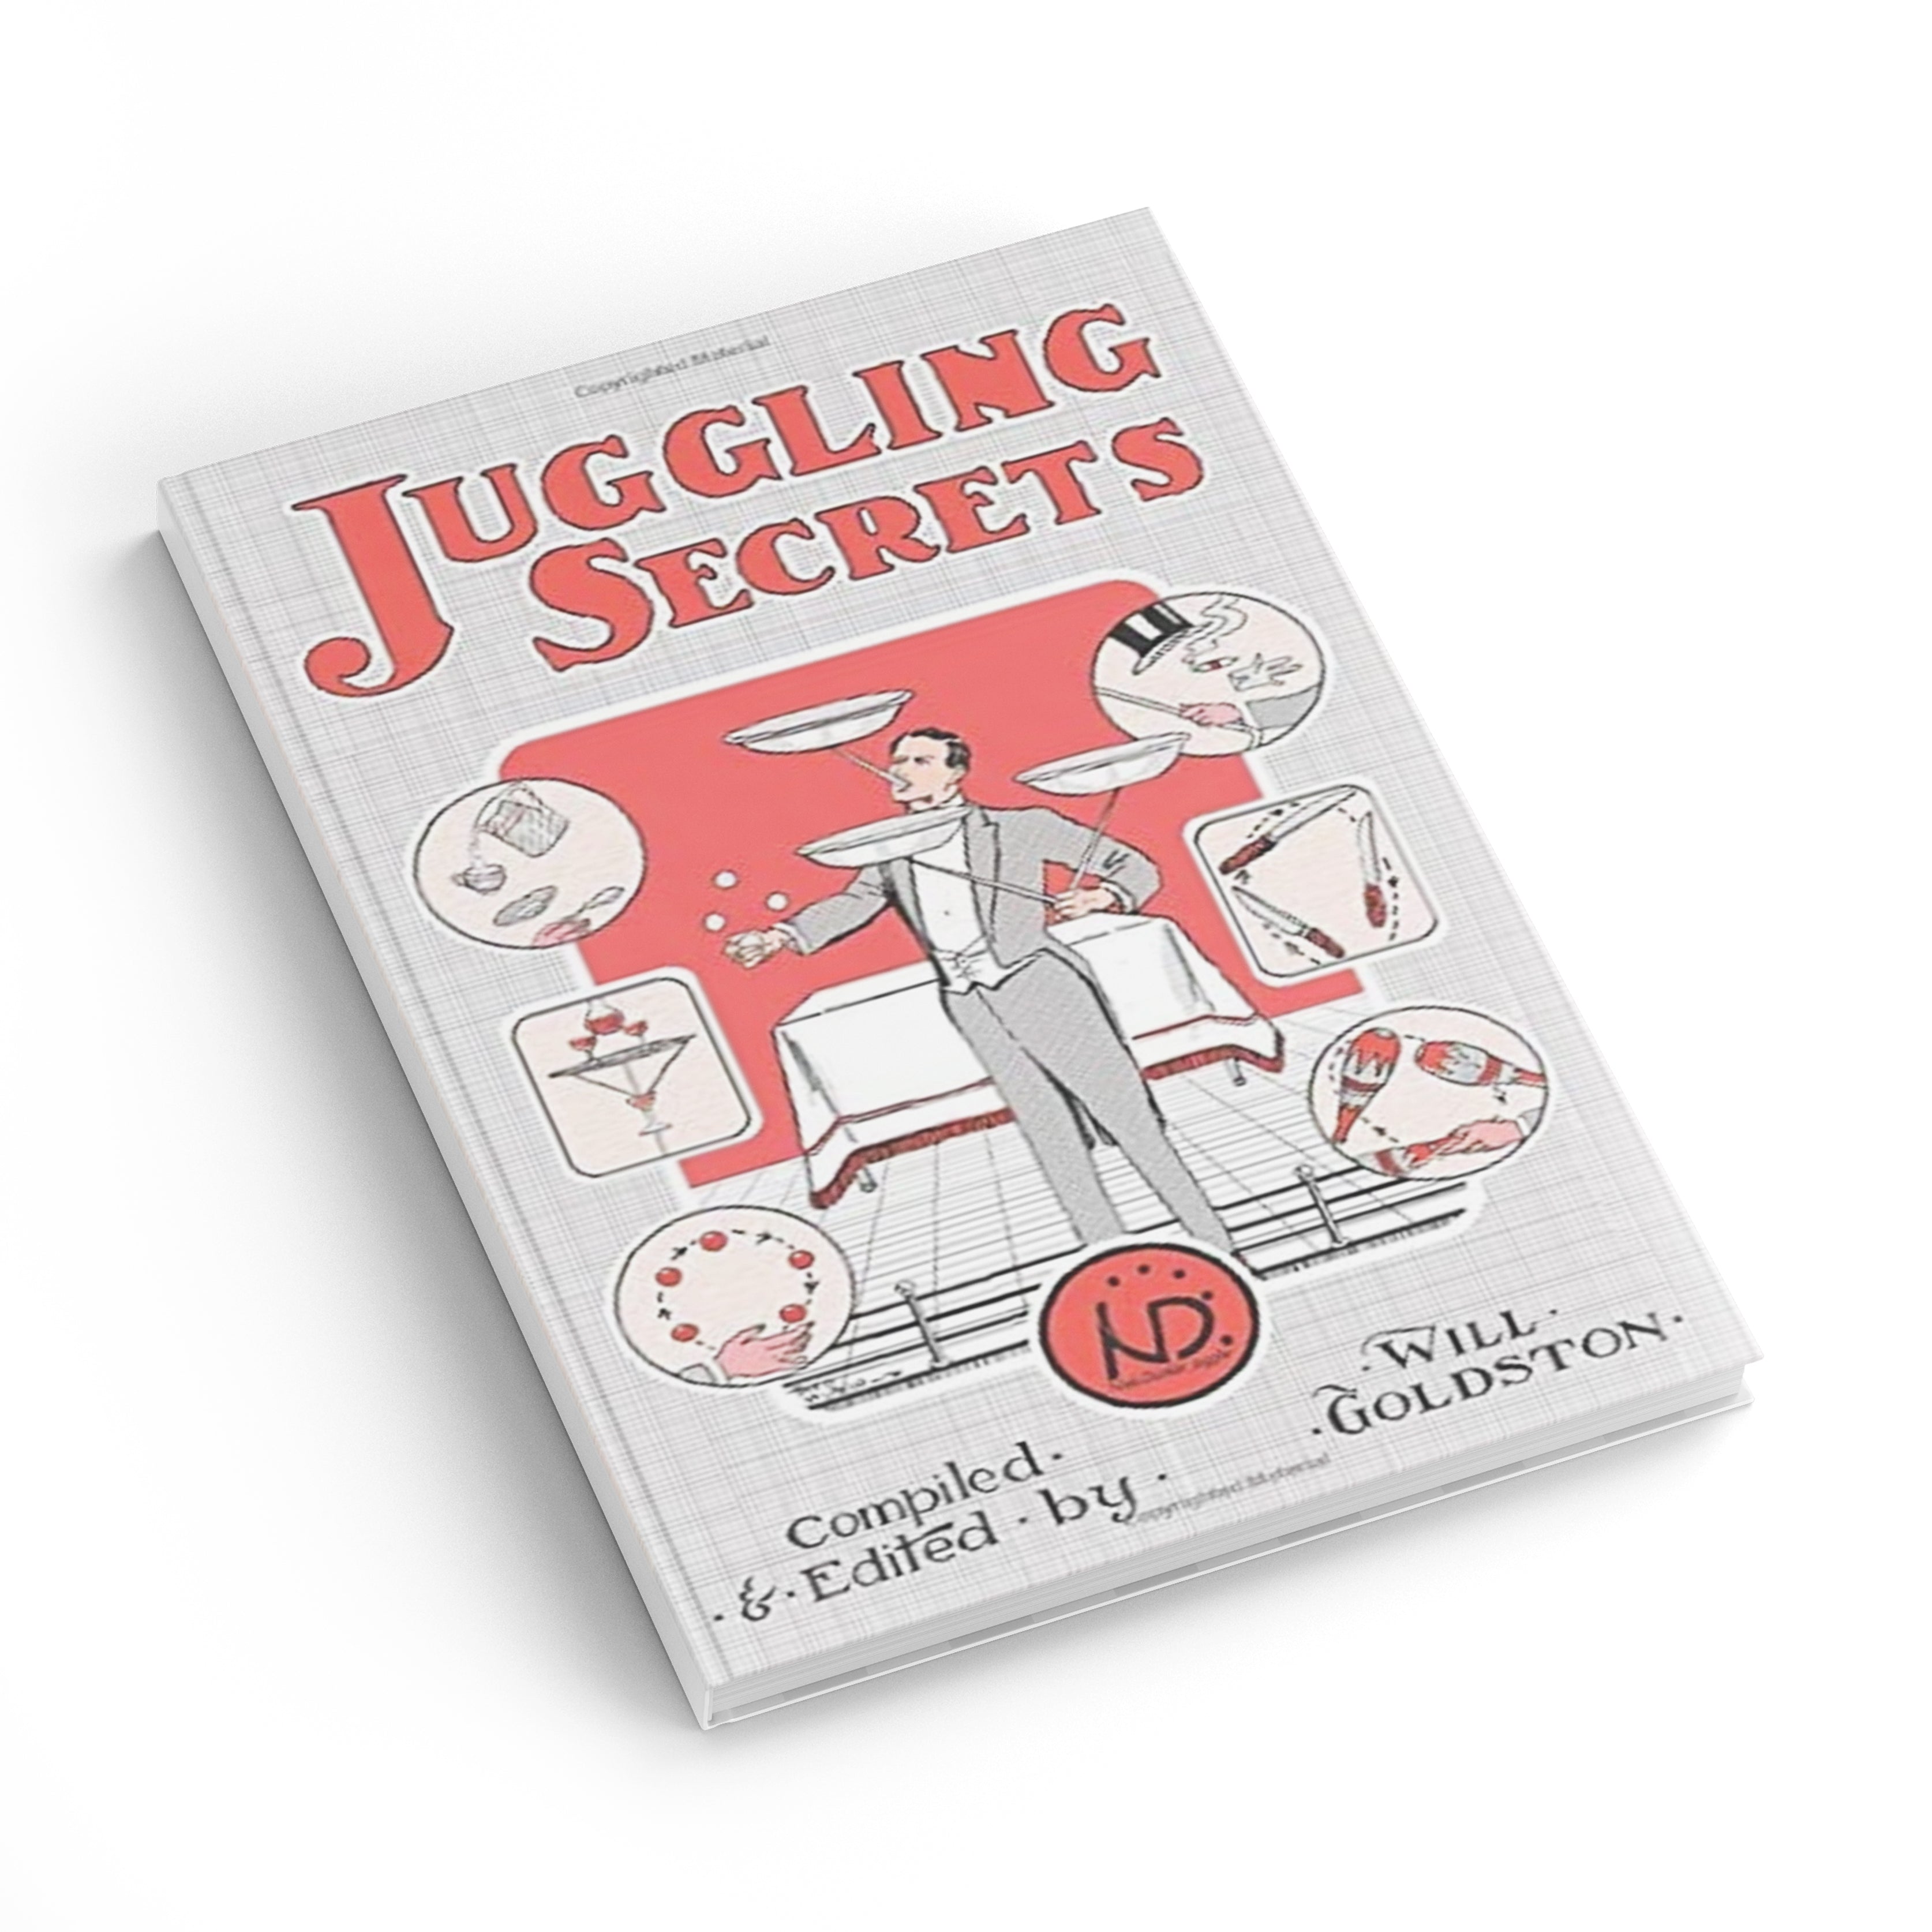 Juggling Secrets by Will Goldston